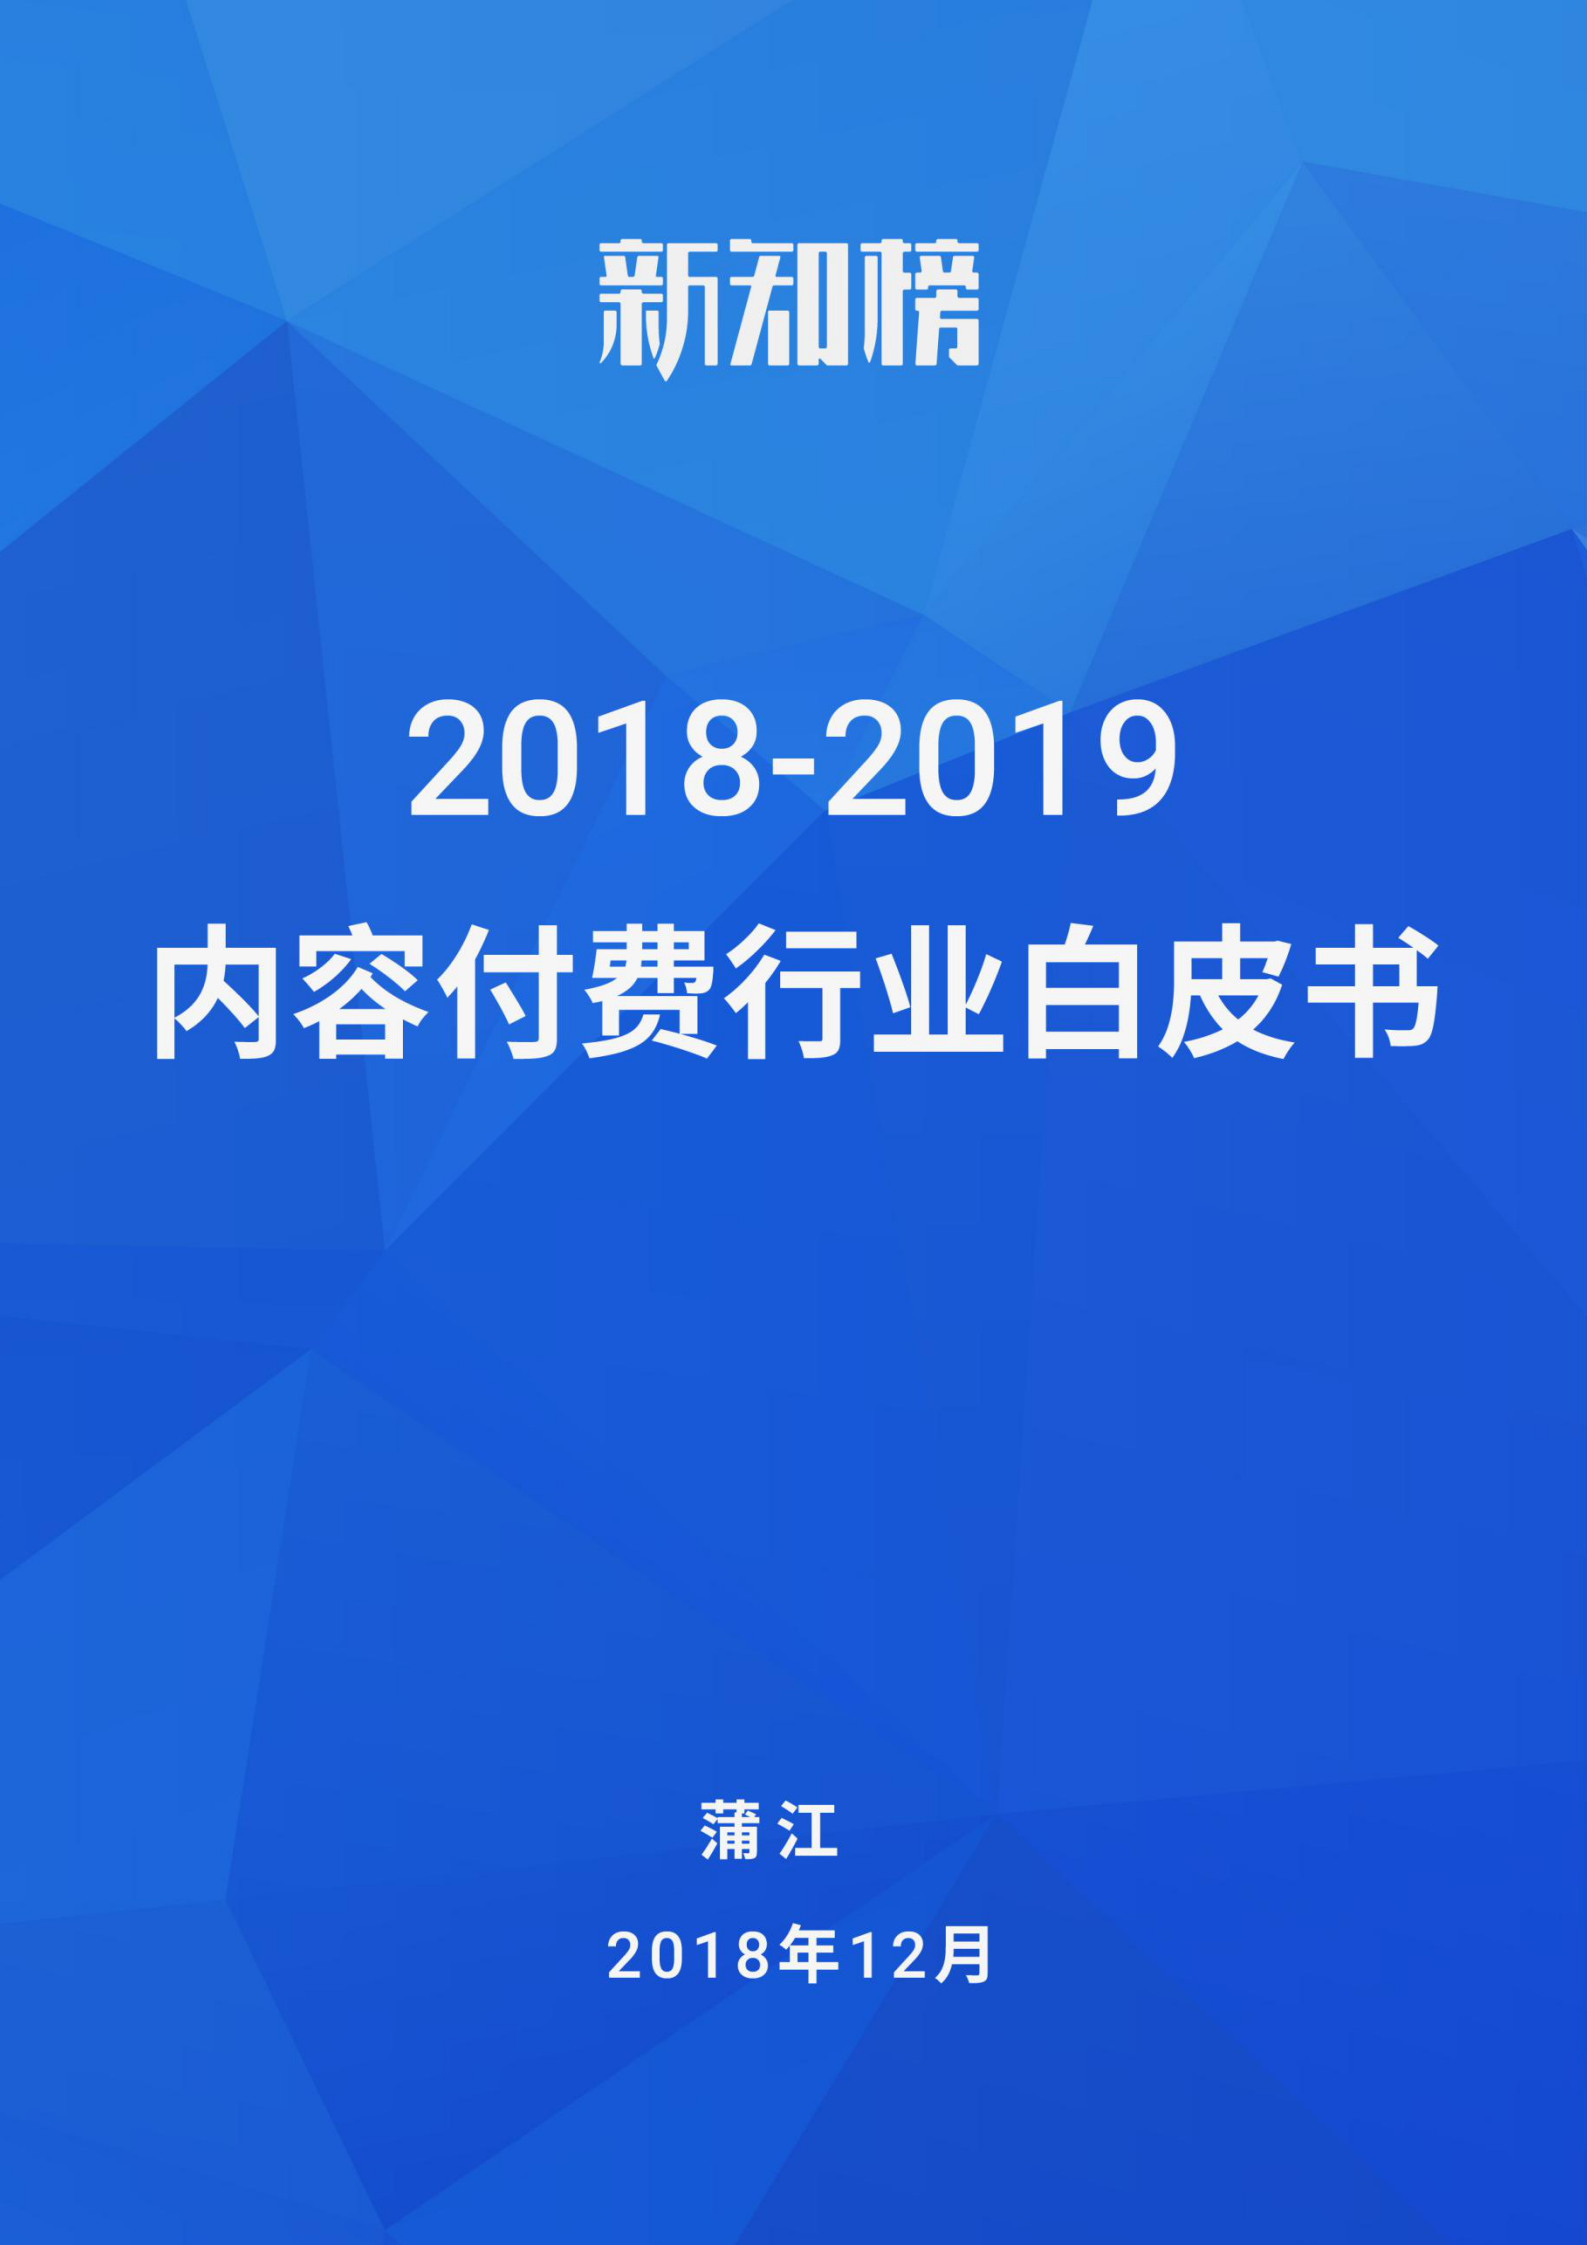 新知榜2018-2019内容付费行业白皮书_01.png